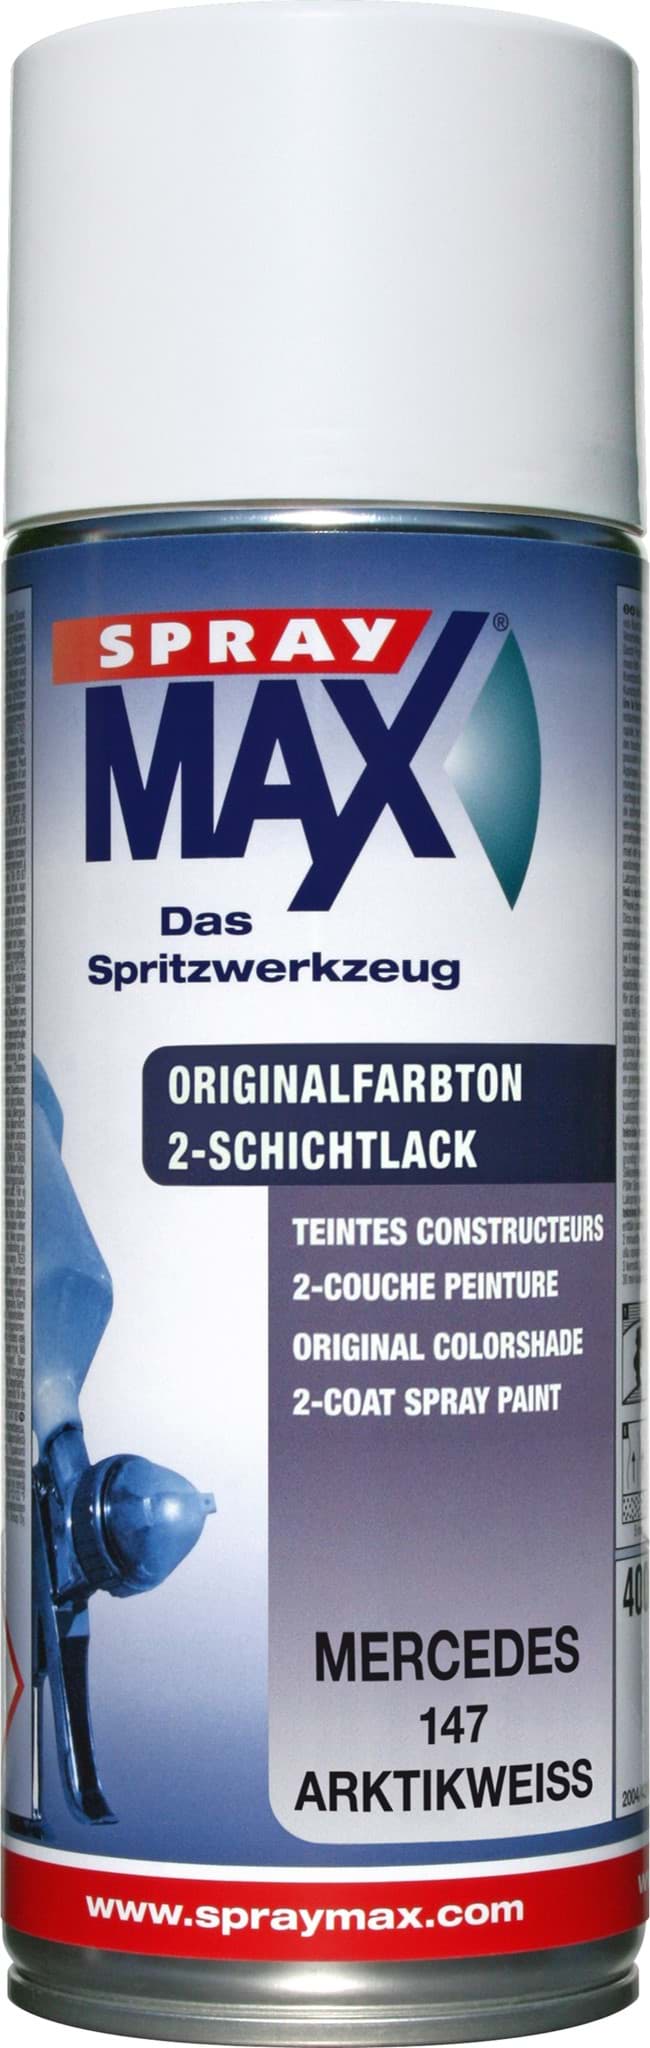 Изображение SprayMax Originalfarbton für Mercedes 147 arktikweiss